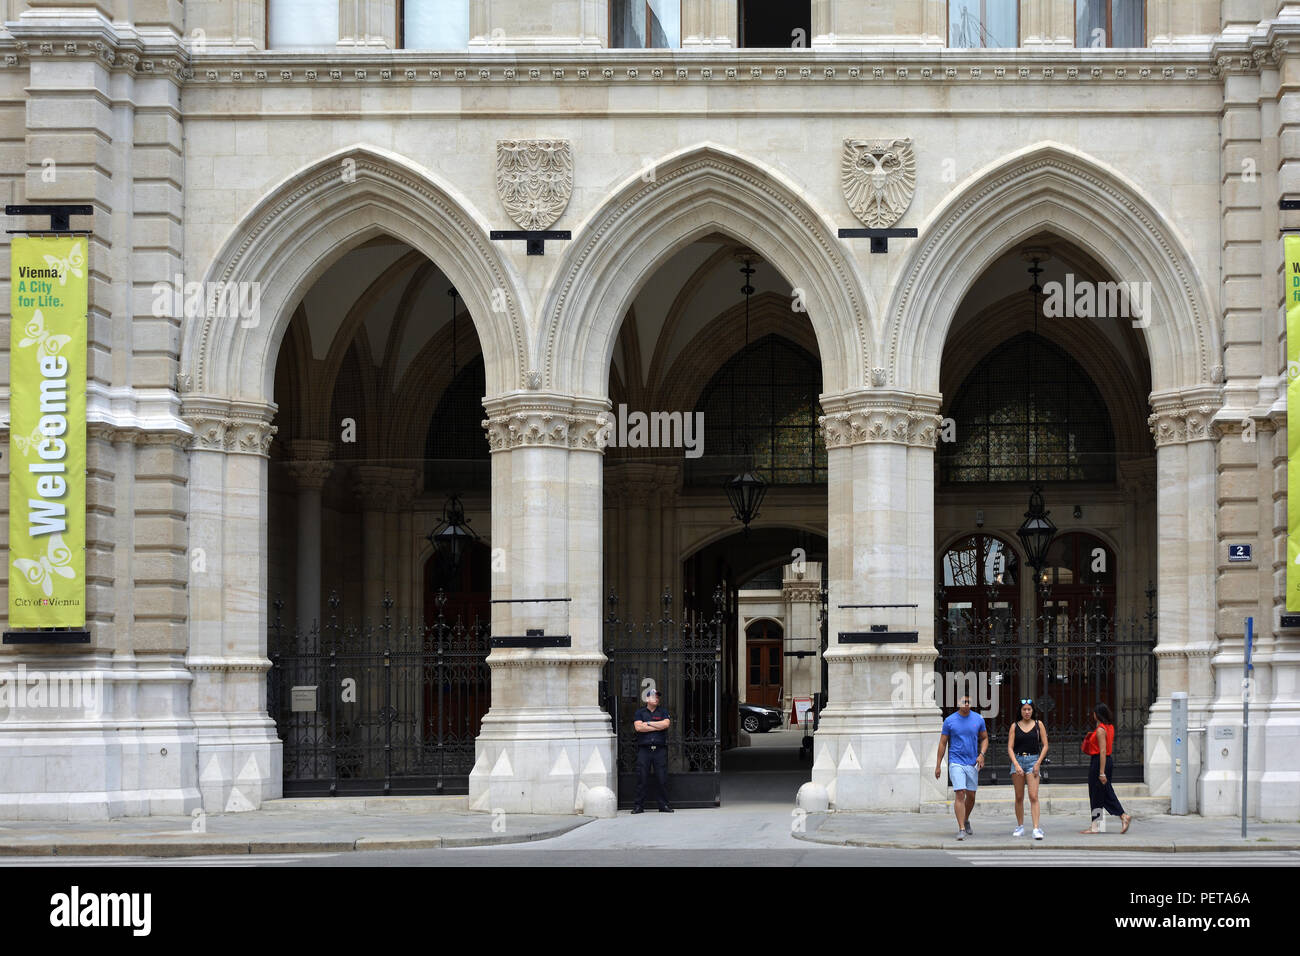 Entrée principale de l'hôtel de ville de la capitale autrichienne Vienne construit de 1872 à 1883 - Autriche. Banque D'Images